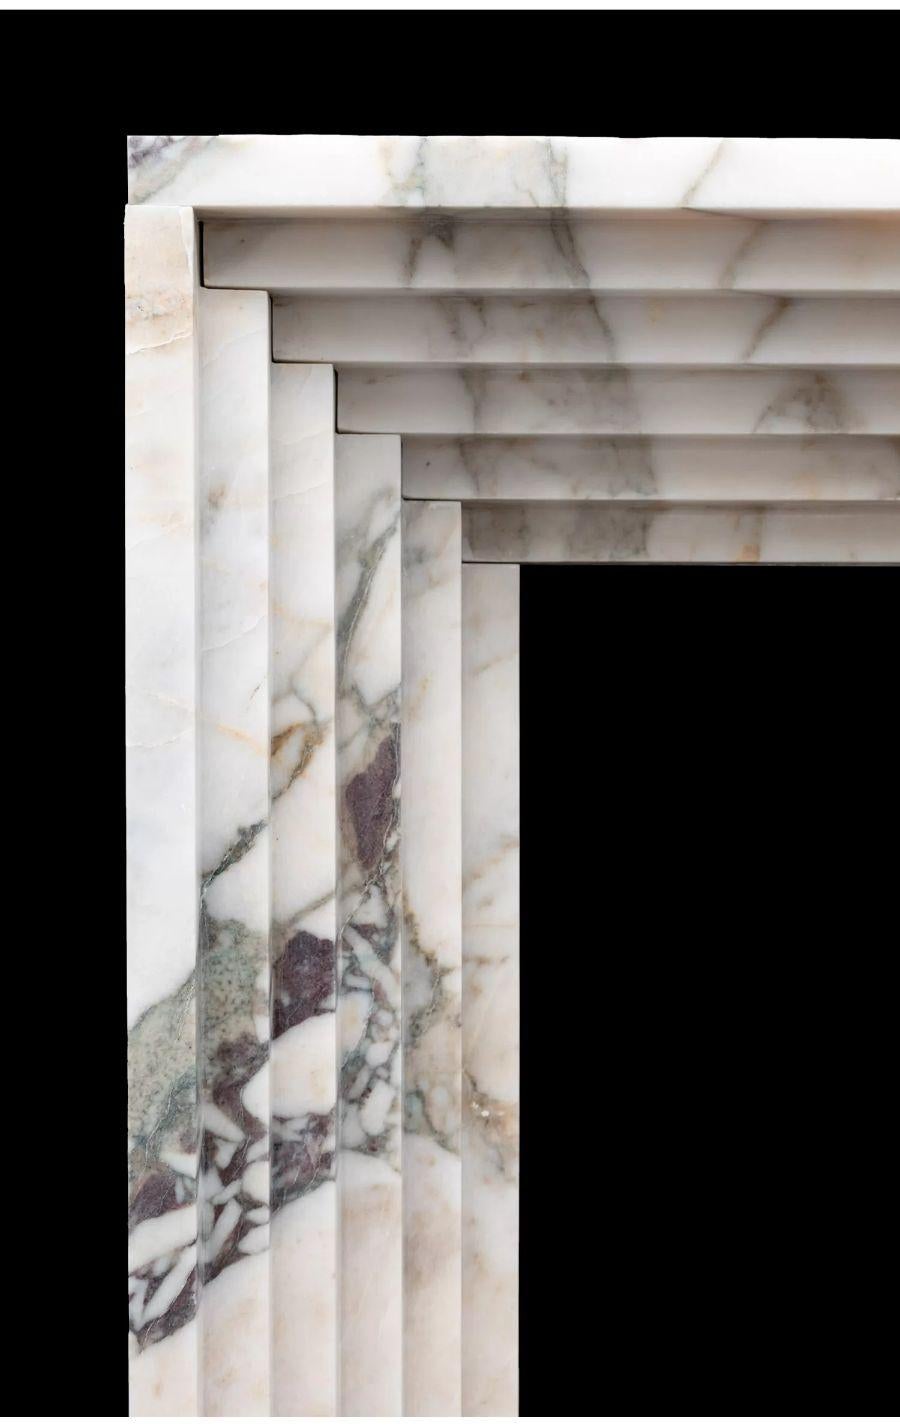 Ein handgefertigter Marmorkamin im Art-Deco-Stil, hergestellt aus drei massiven Marmorblöcken.

Dieser stilvolle Kamin spiegelt den Art-Déco-Stil wider, der in den 1930er- und 1940er-Jahren international aufblühte.

Dieser Kamin kann nach Maß und